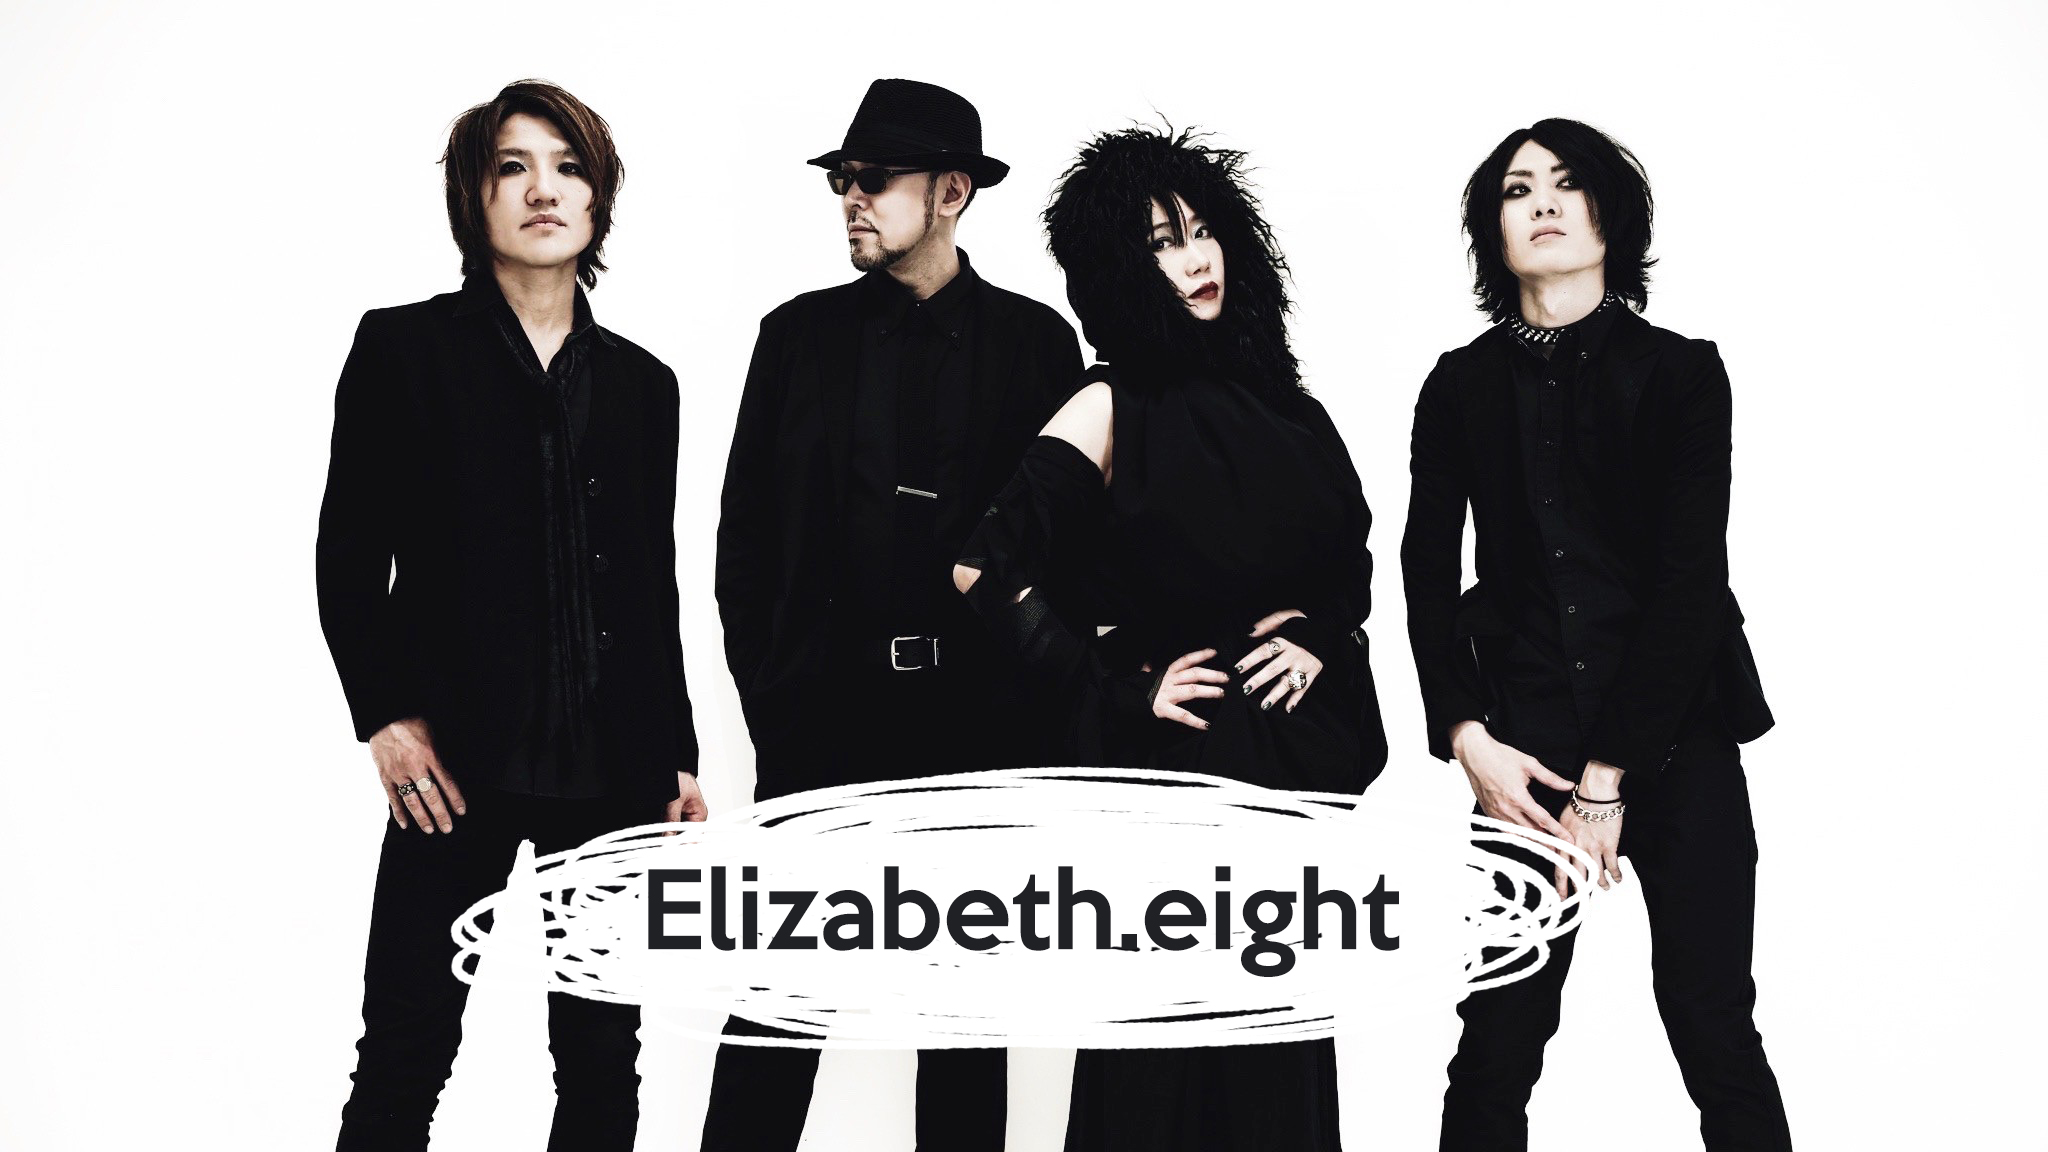 Elizabeth.eight